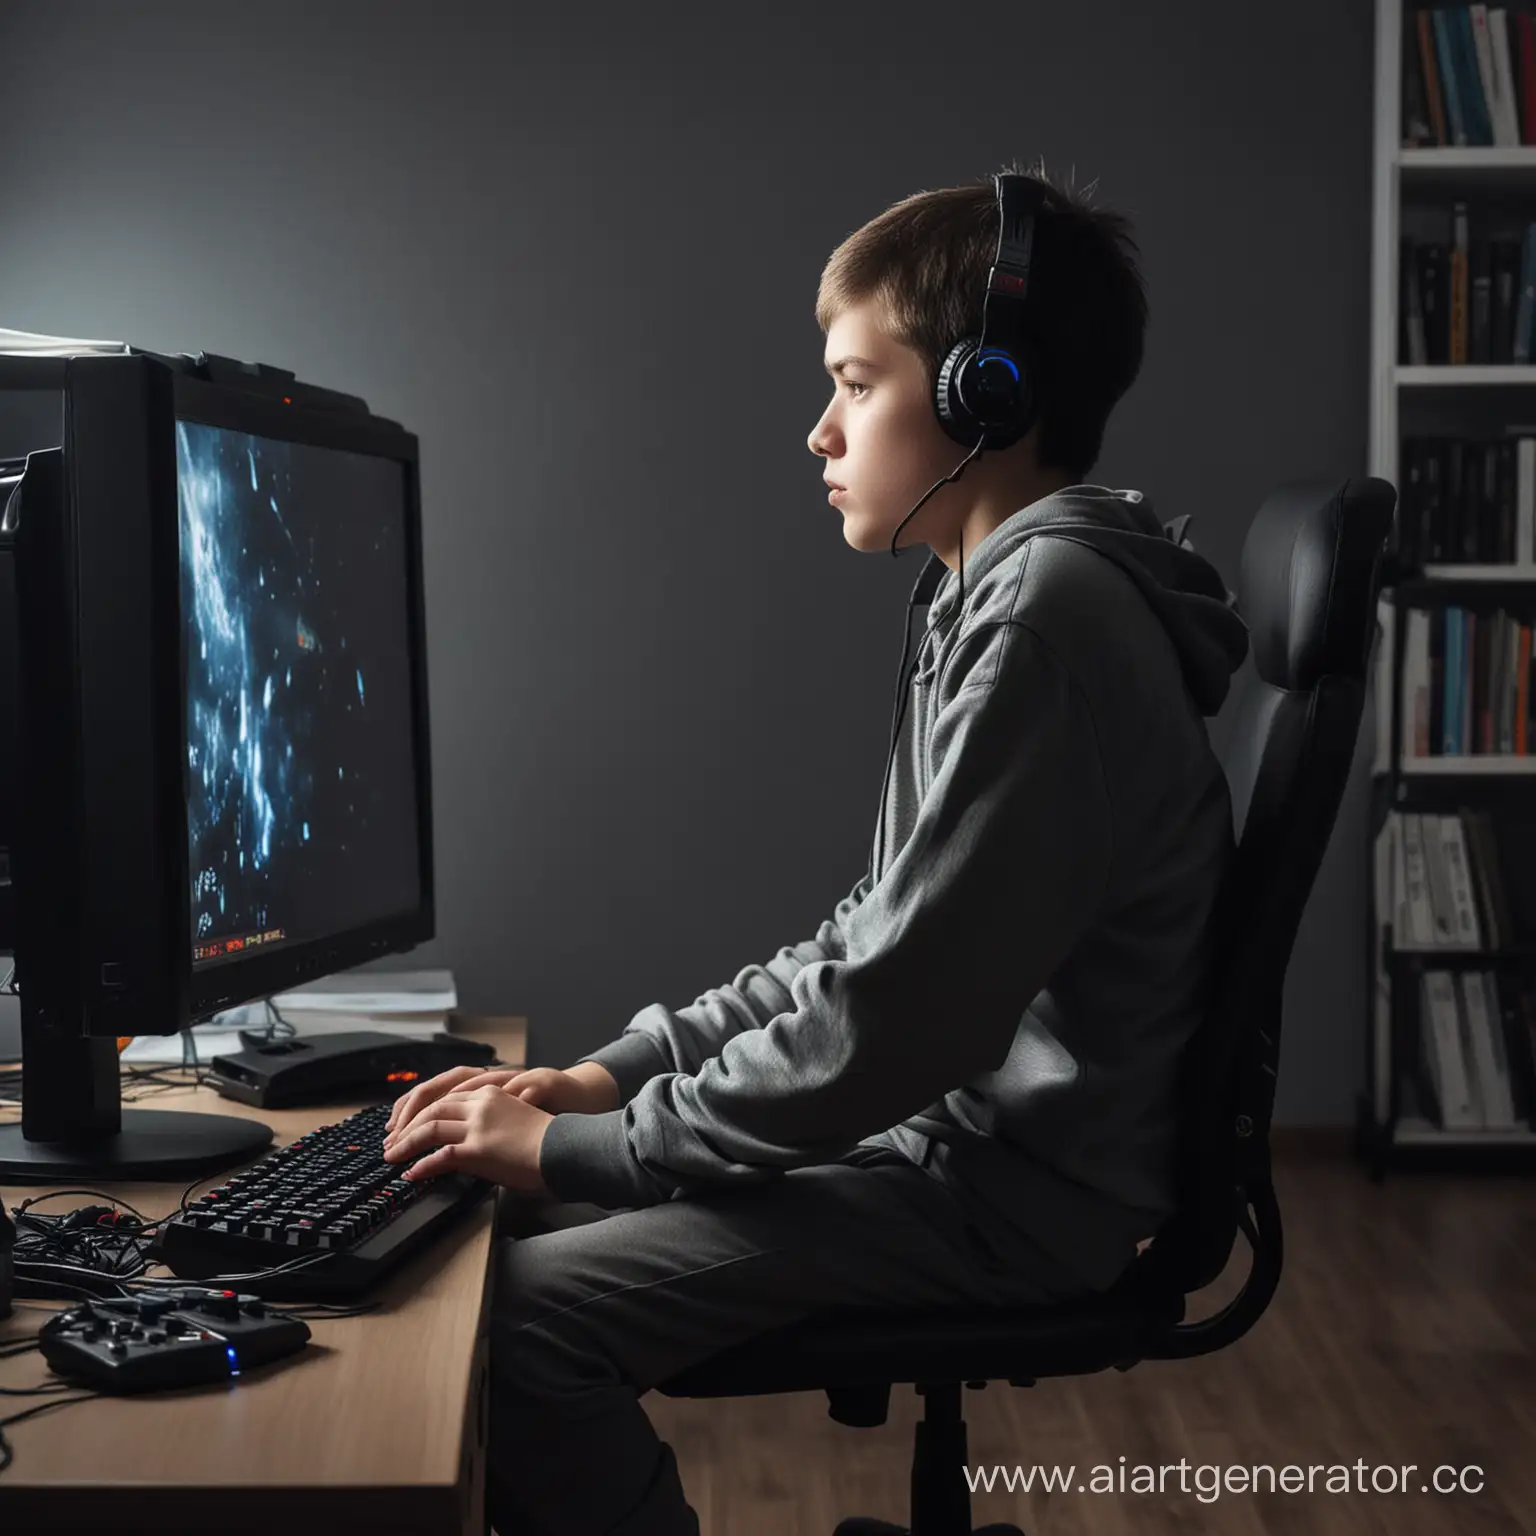 толстый школьник с кривым позвоночником сидит много времени за компьютерными играми, он очень зависимый, в комнате темно и у него игровой компьютер